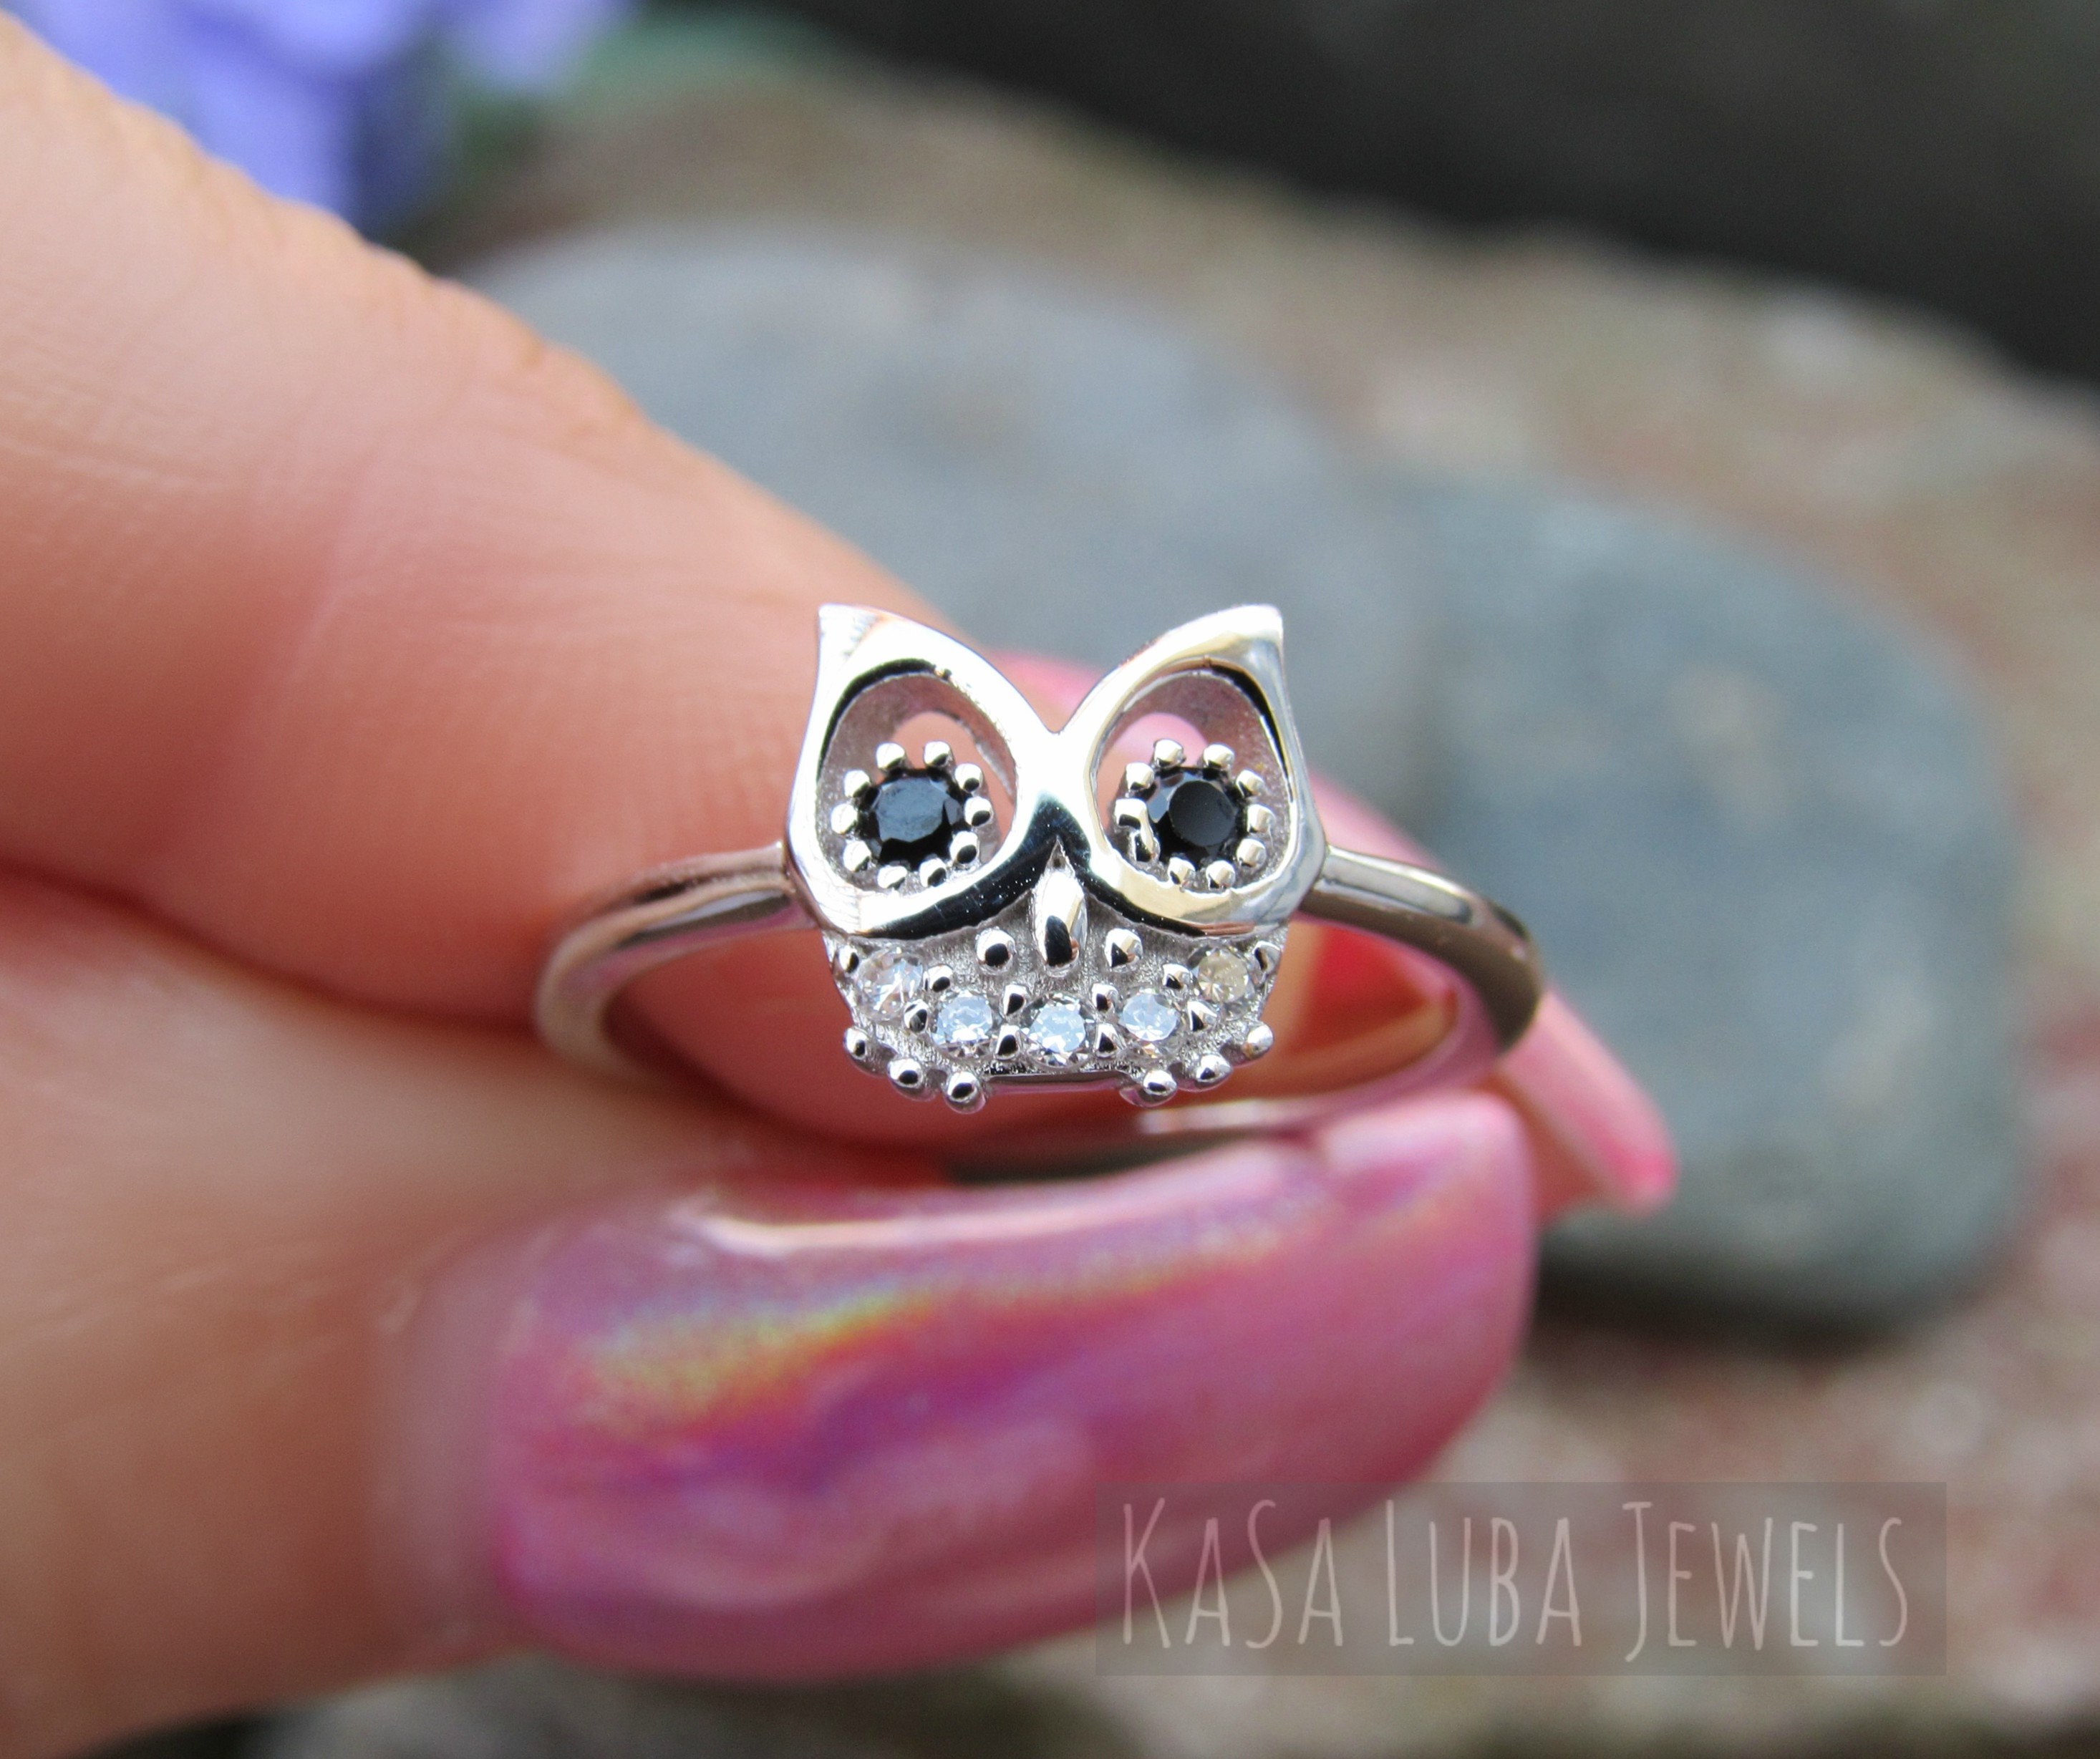 Lovely Mini Owl Branch Cute Crystal Charm Purse Handbag Car Key Keyring  Keychain Party Wedding Birthday Gift - AliExpress